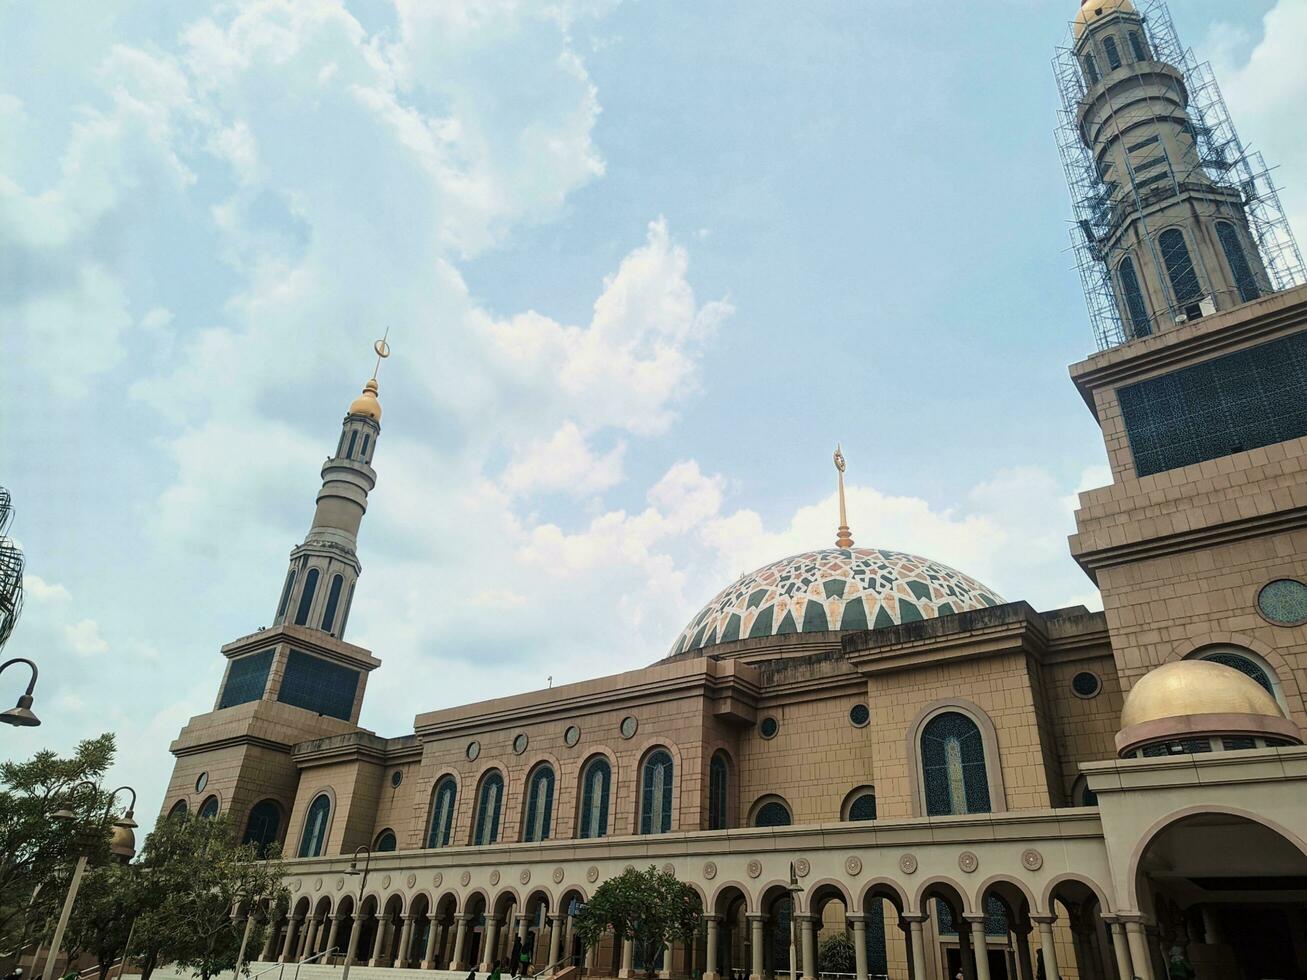 de Islamitisch centrum, de grootste moskee in de stad van samarinda, oosten- kalimantaan, is geschikt net zo een toerist attractie foto